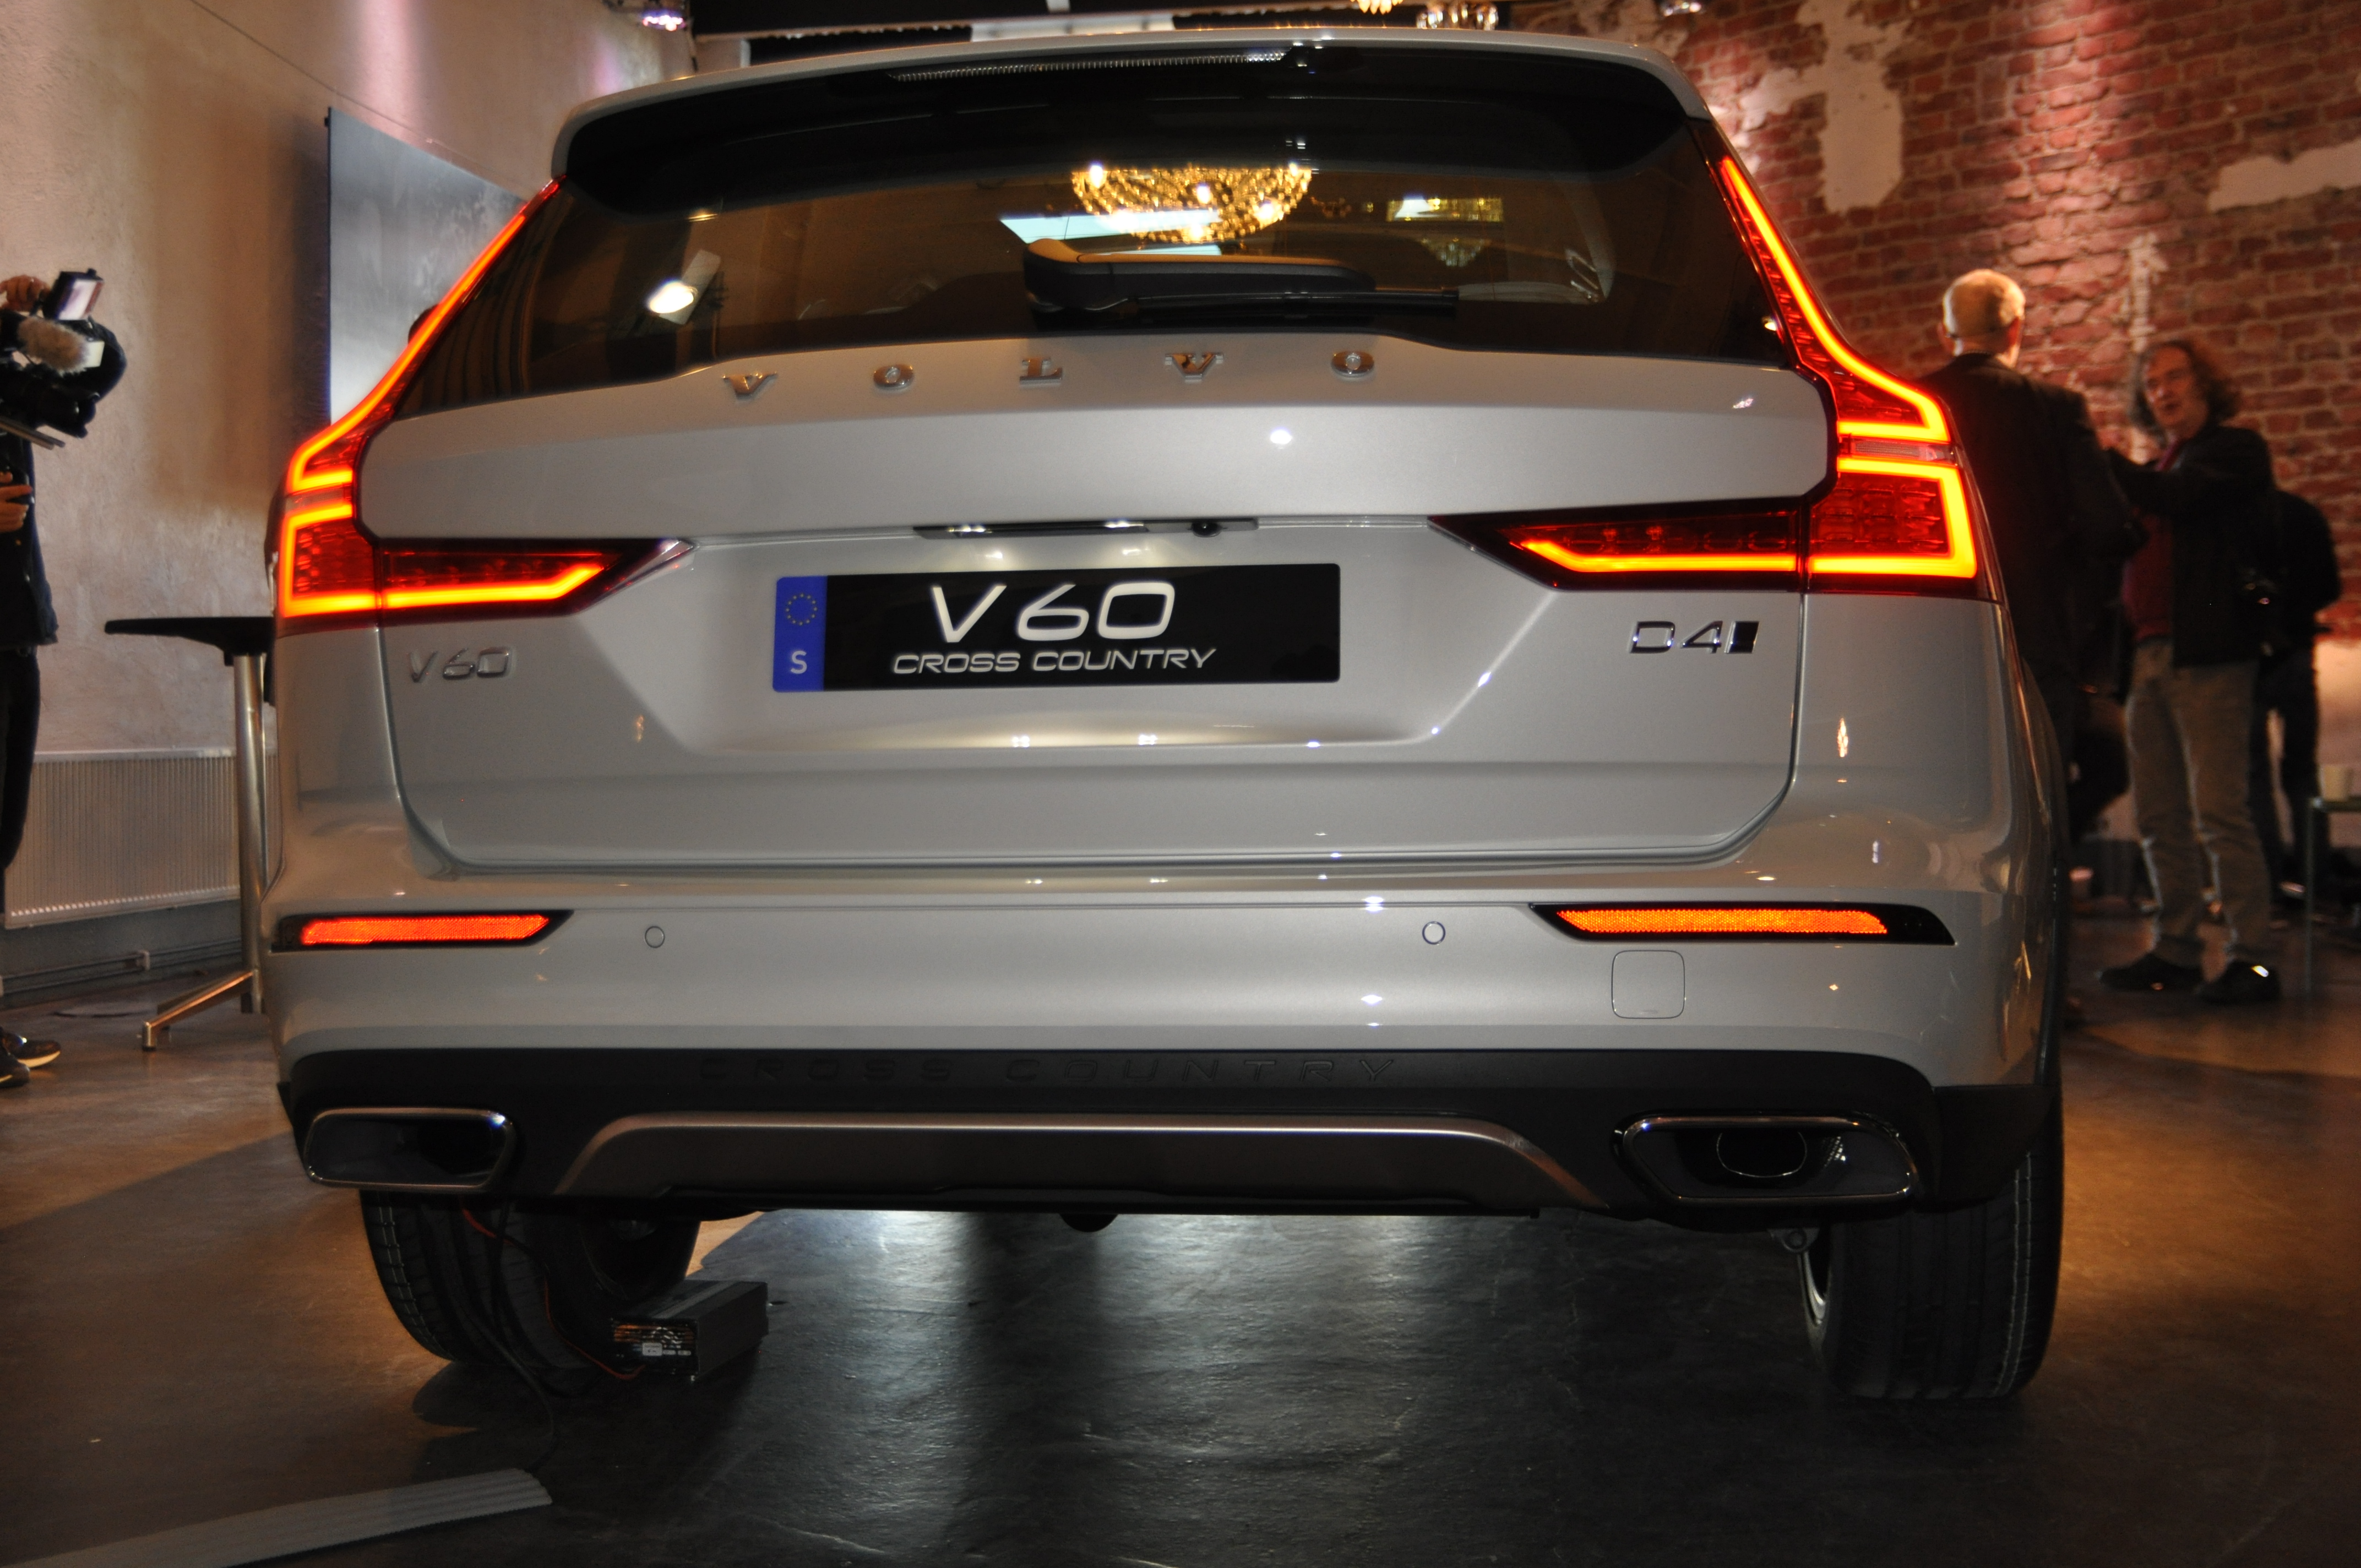 Volvo V60 Cross Country best big